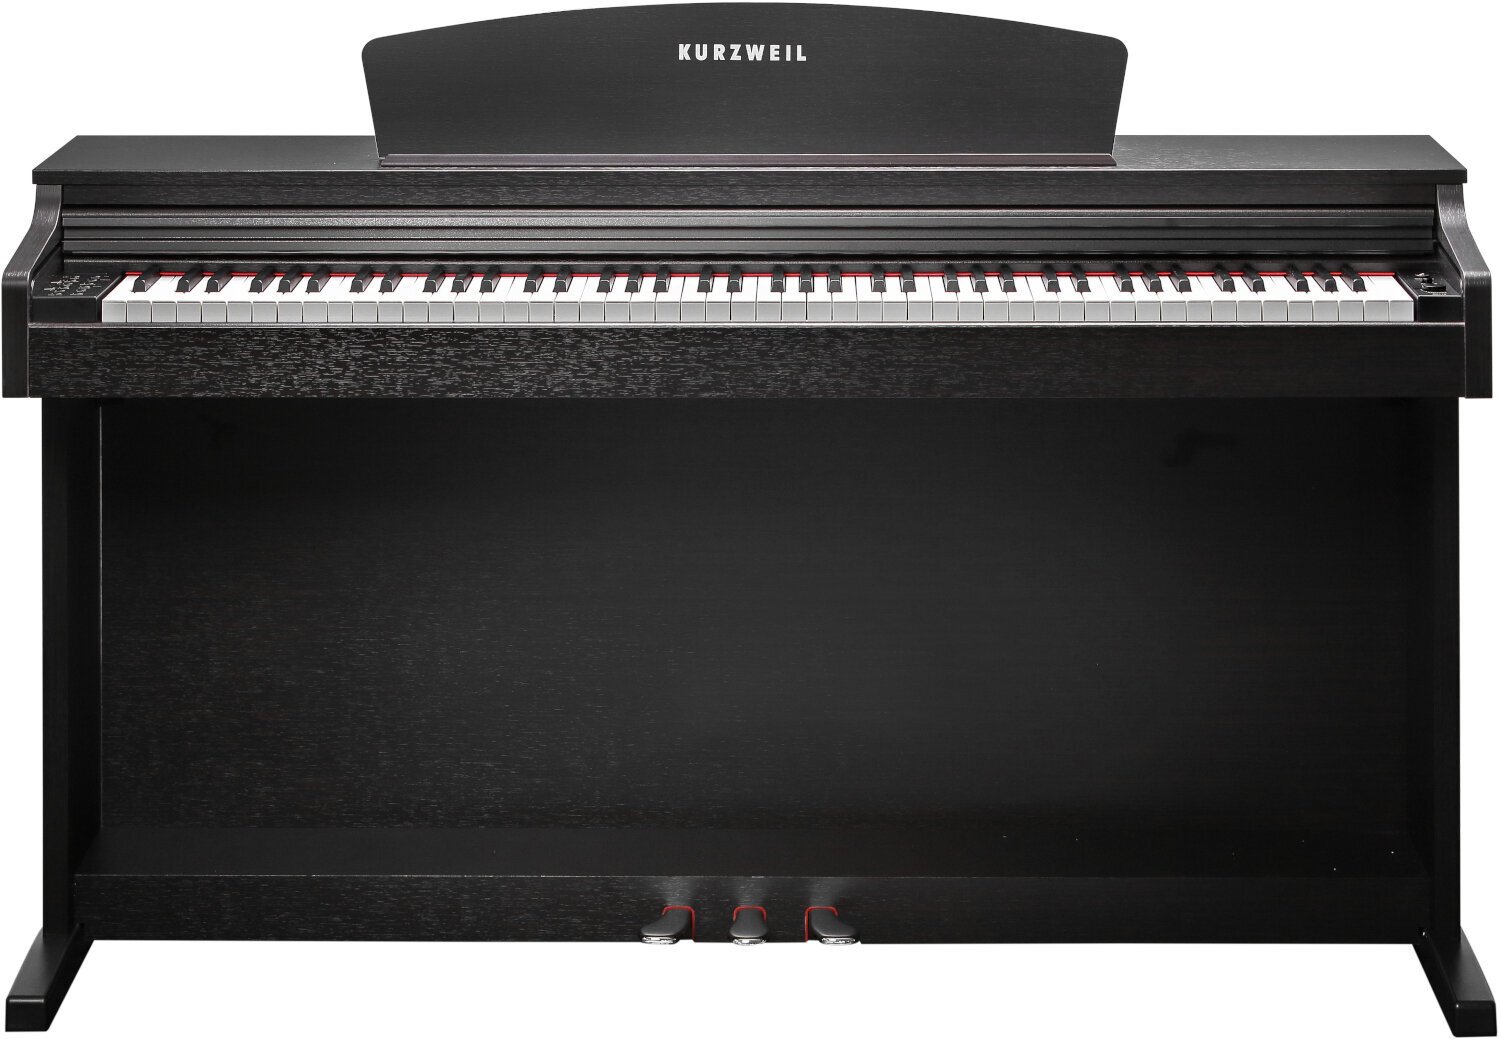 Piano numérique Kurzweil M115 Simulated Rosewood Piano numérique